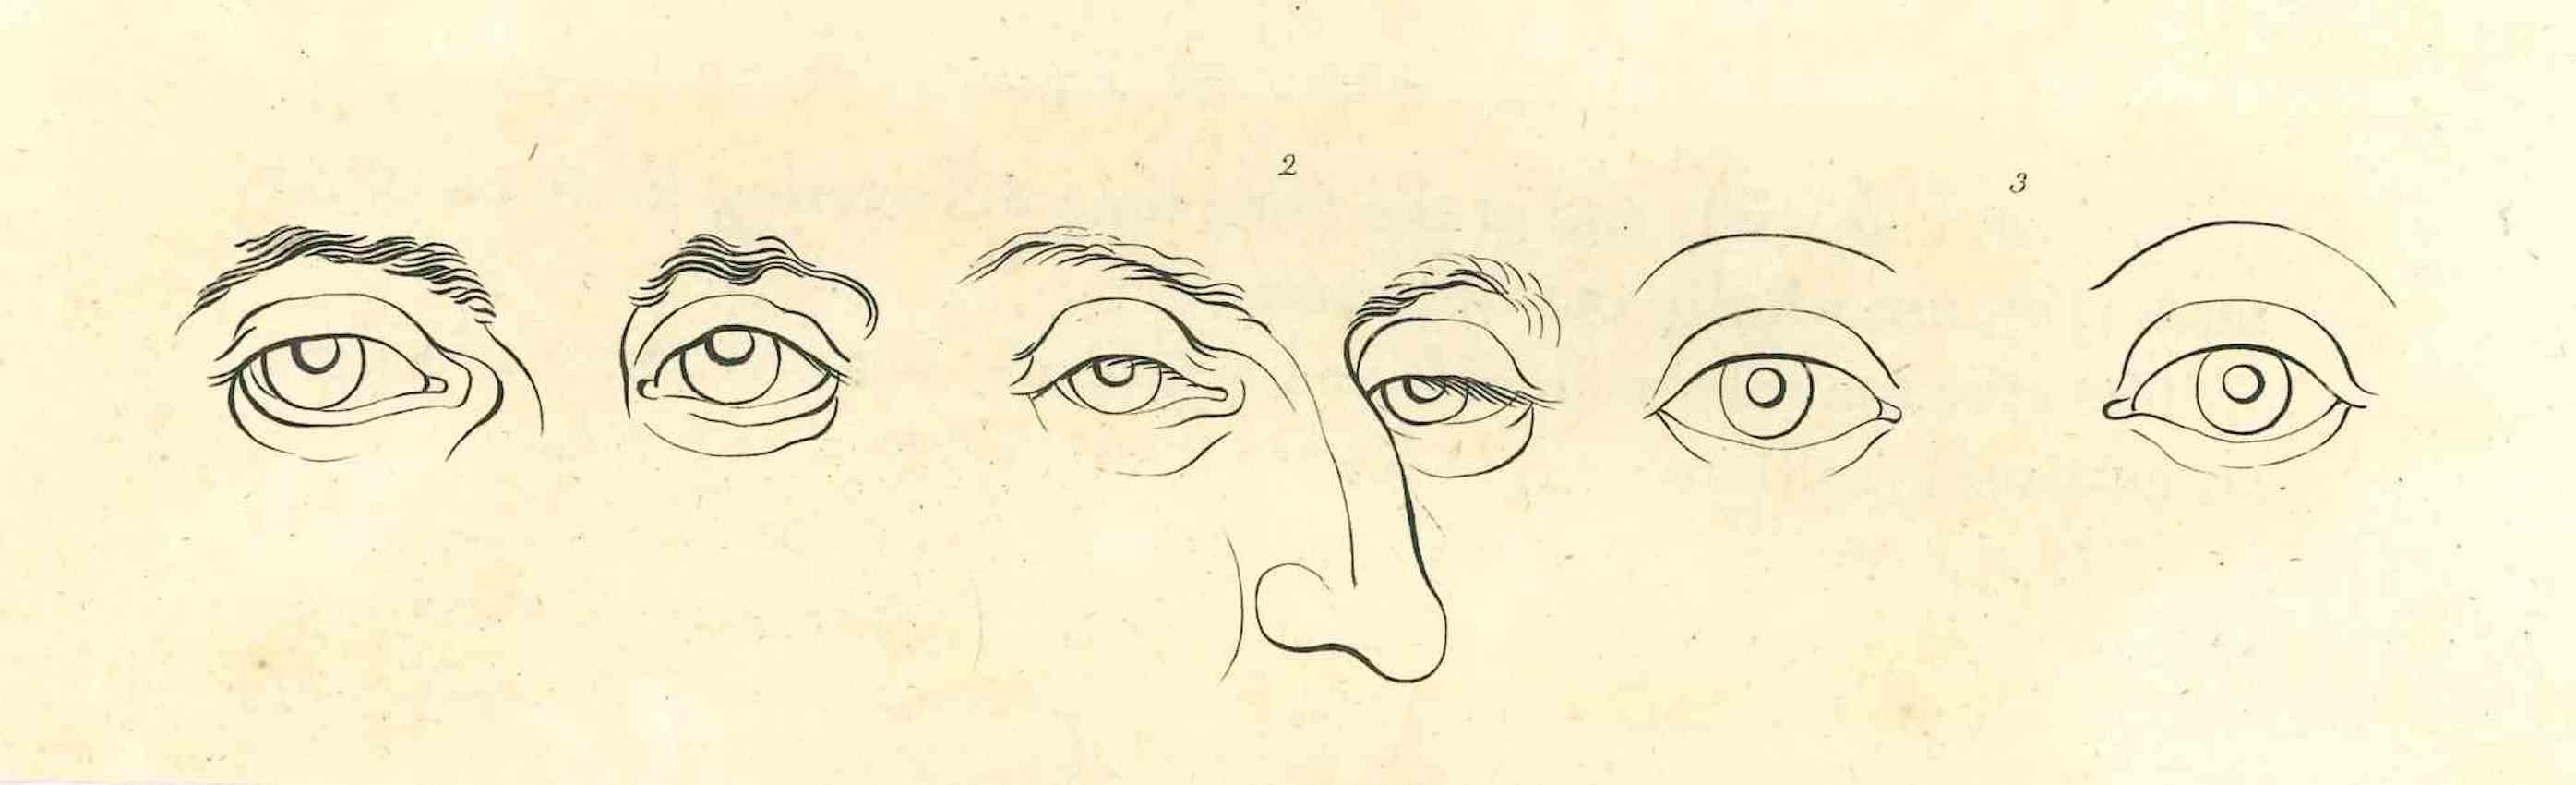 La physionomie - Les yeux est une gravure originale réalisée par Thomas Holloway pour les "Essais sur la physionomie, destinés à promouvoir la connaissance et l'amour de l'humanité" de Johann Caspar Lavater, Londres, Bensley, 1810. 

Bonnes